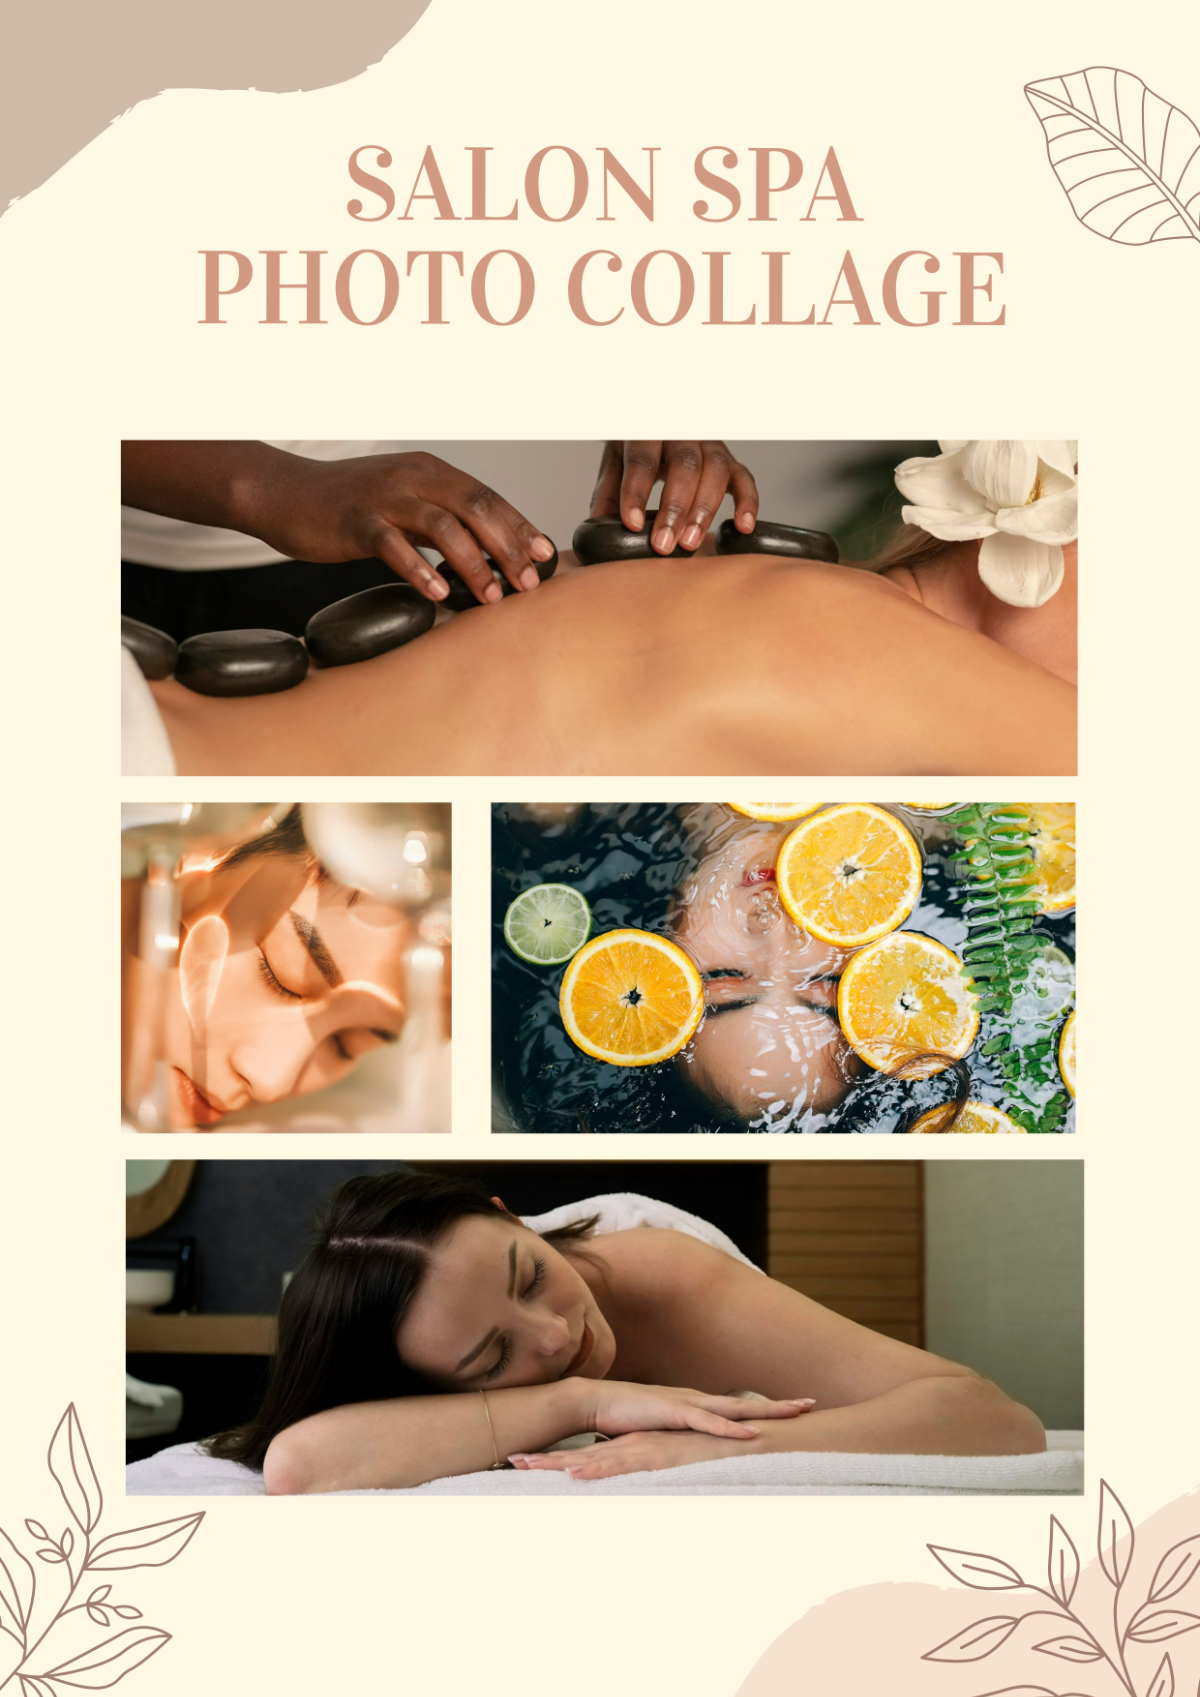 Salon Spa Photo Collage